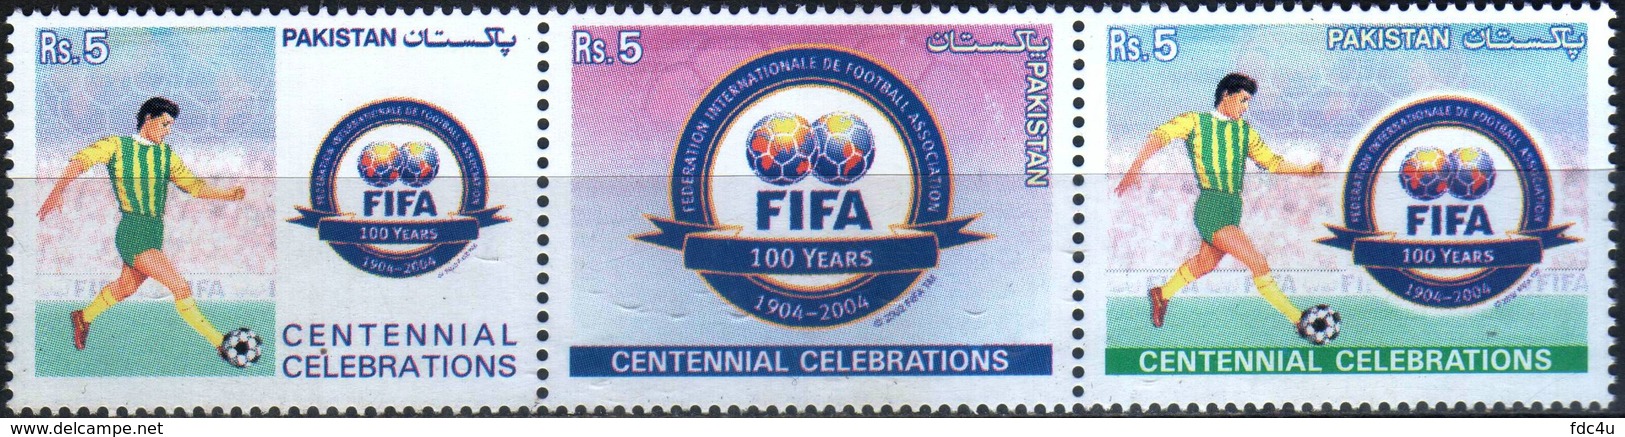 Pakistan Fdc 2004 First Day Brochure & Stamps Fifa Centennial Football Soccer - Pakistán